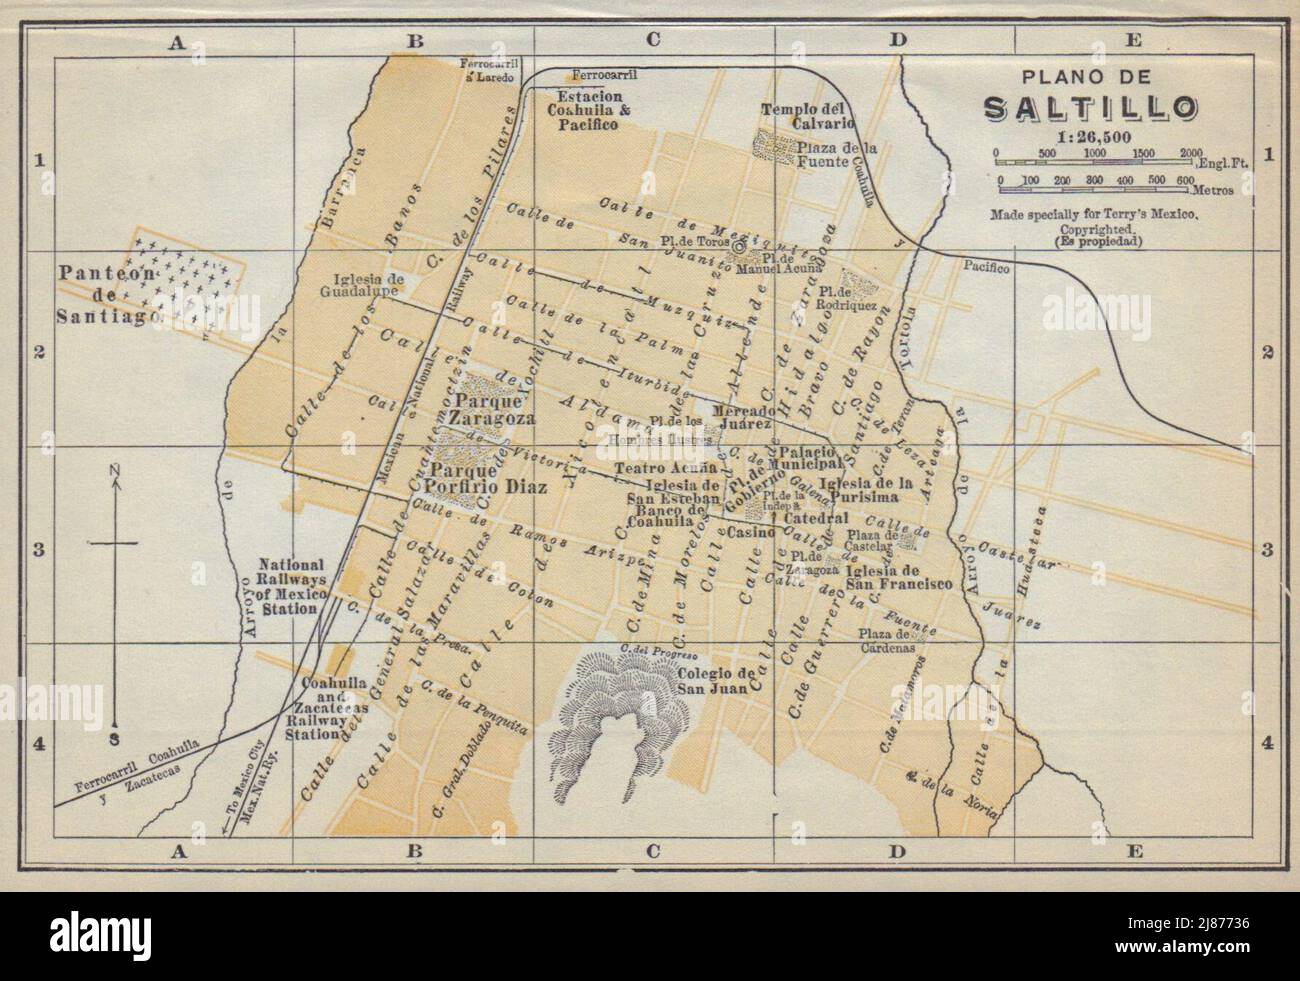 Plano de SALTILLO, Mexico. Mapa de la ciudad. City/town plan 1938 old Stock Photo